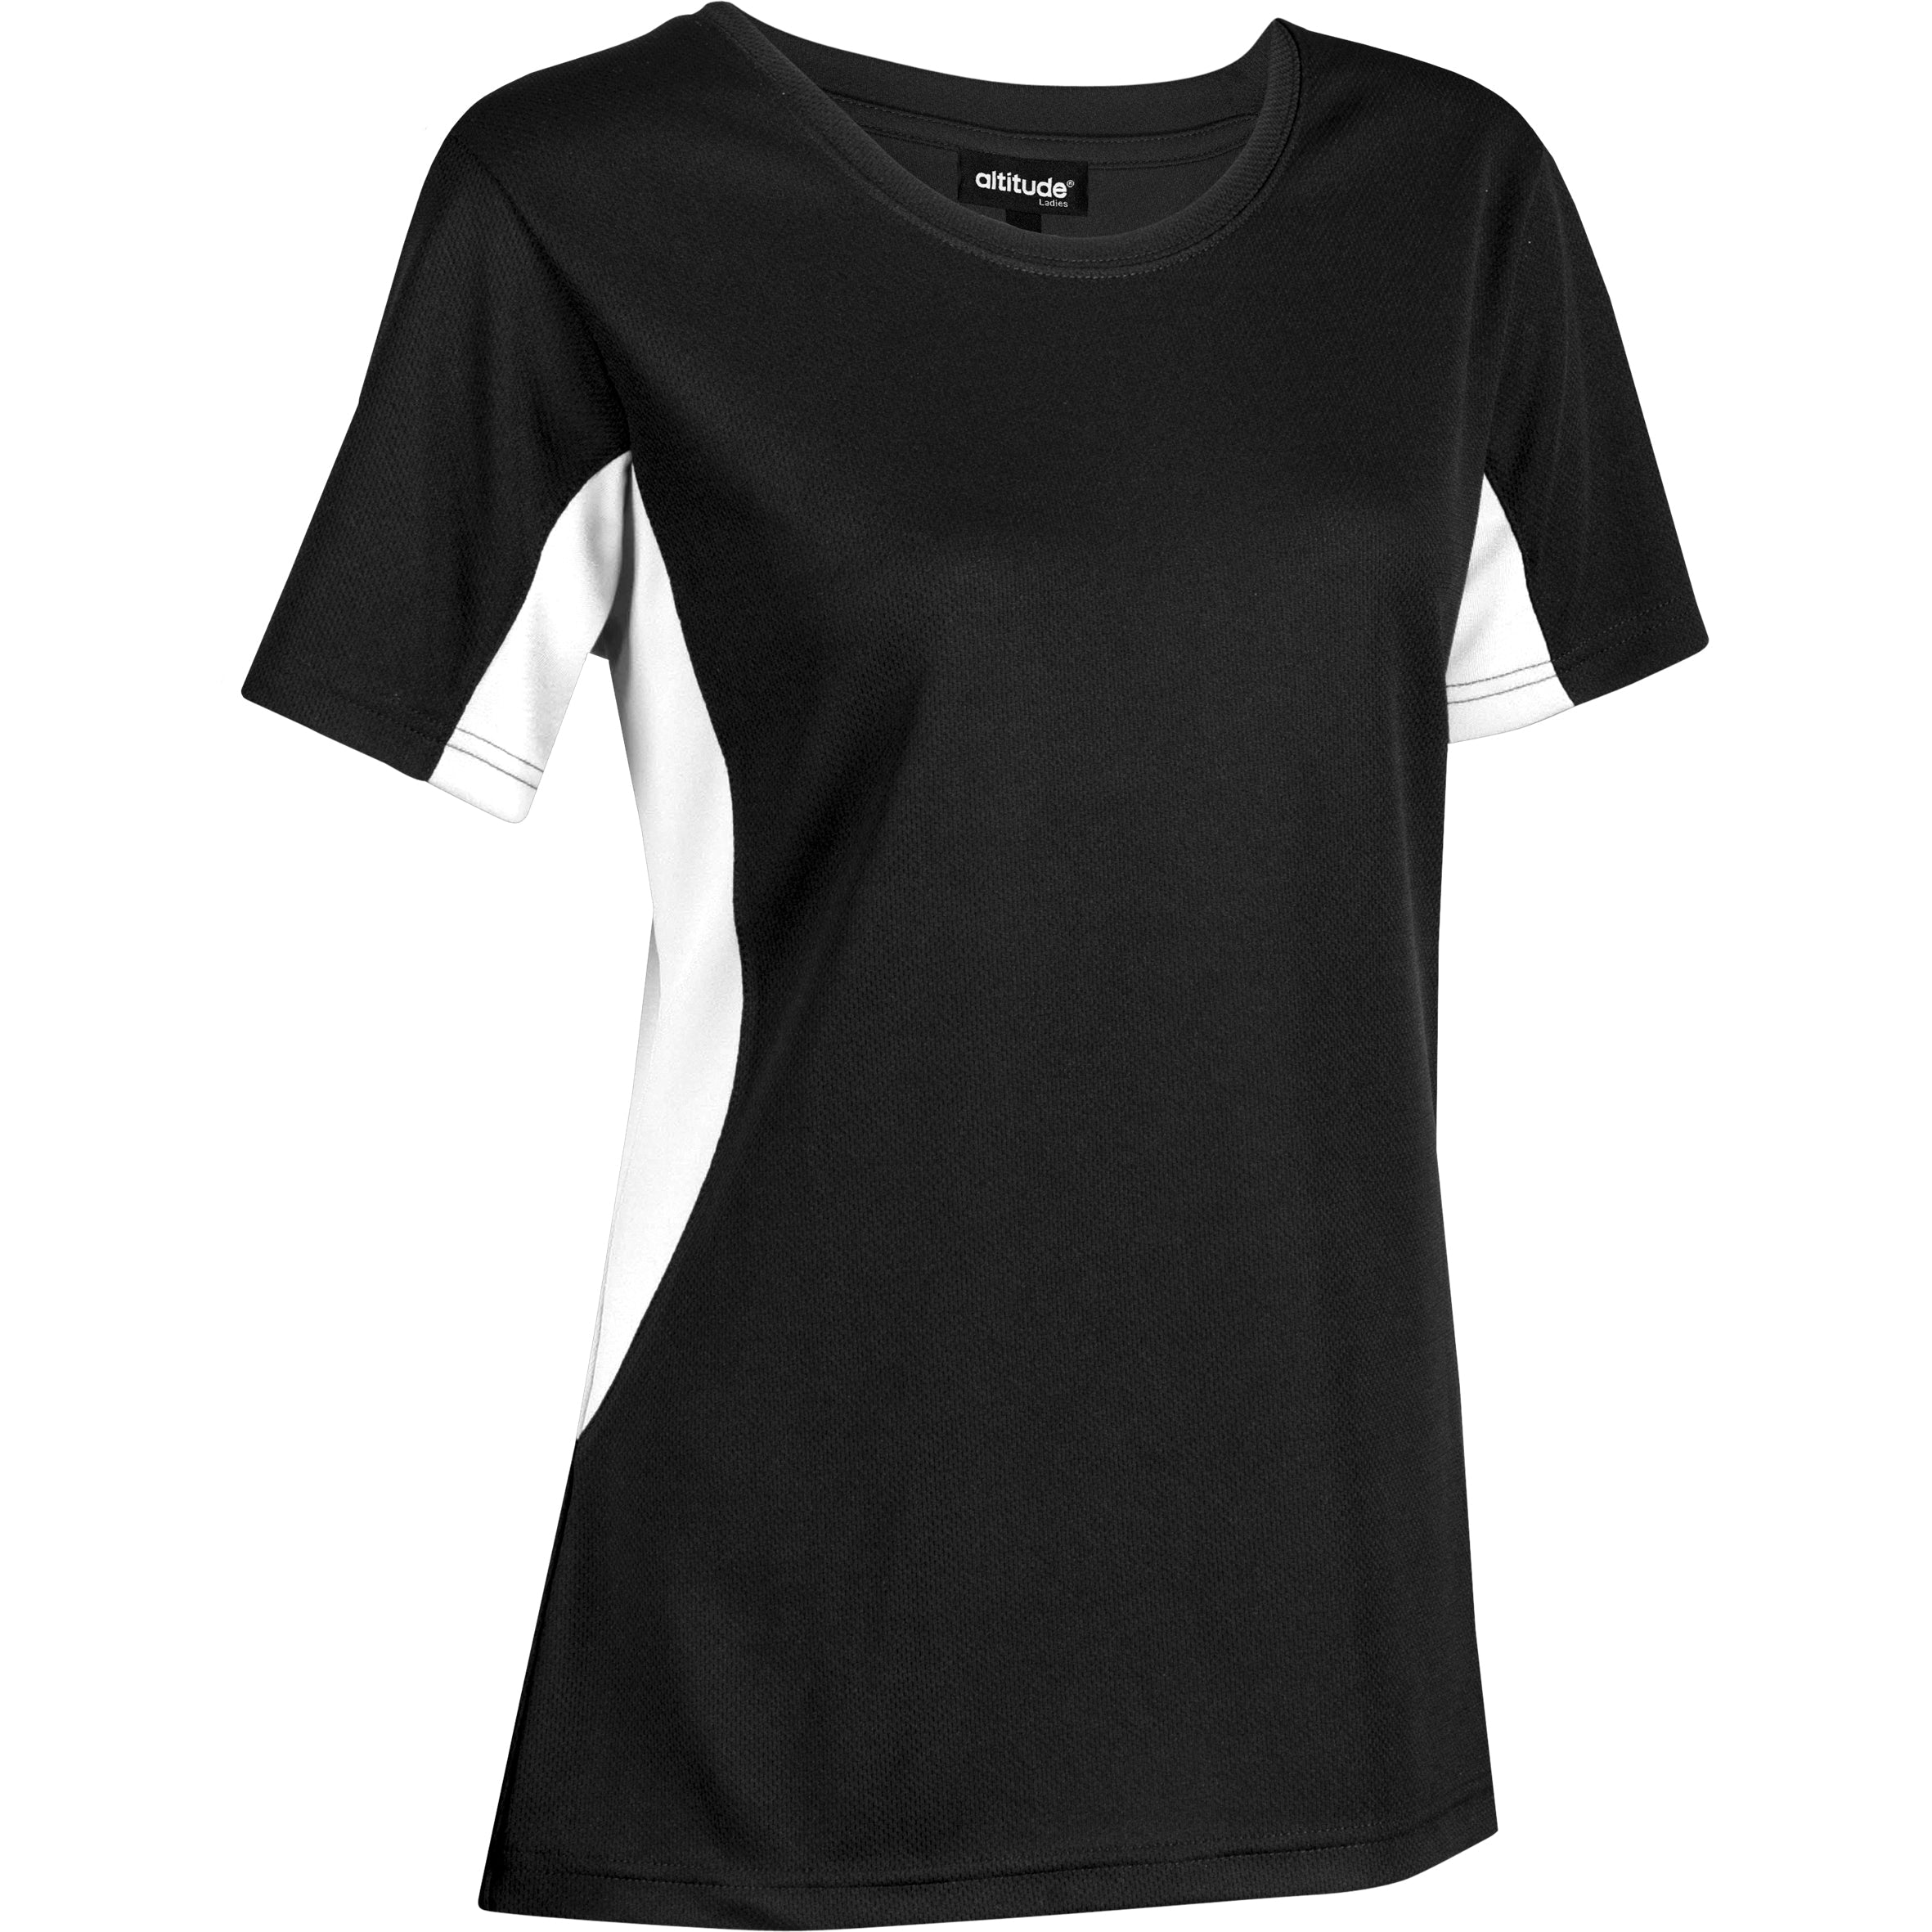 Ladies Championship T-Shirt - Black Only-2XL-Black-BL